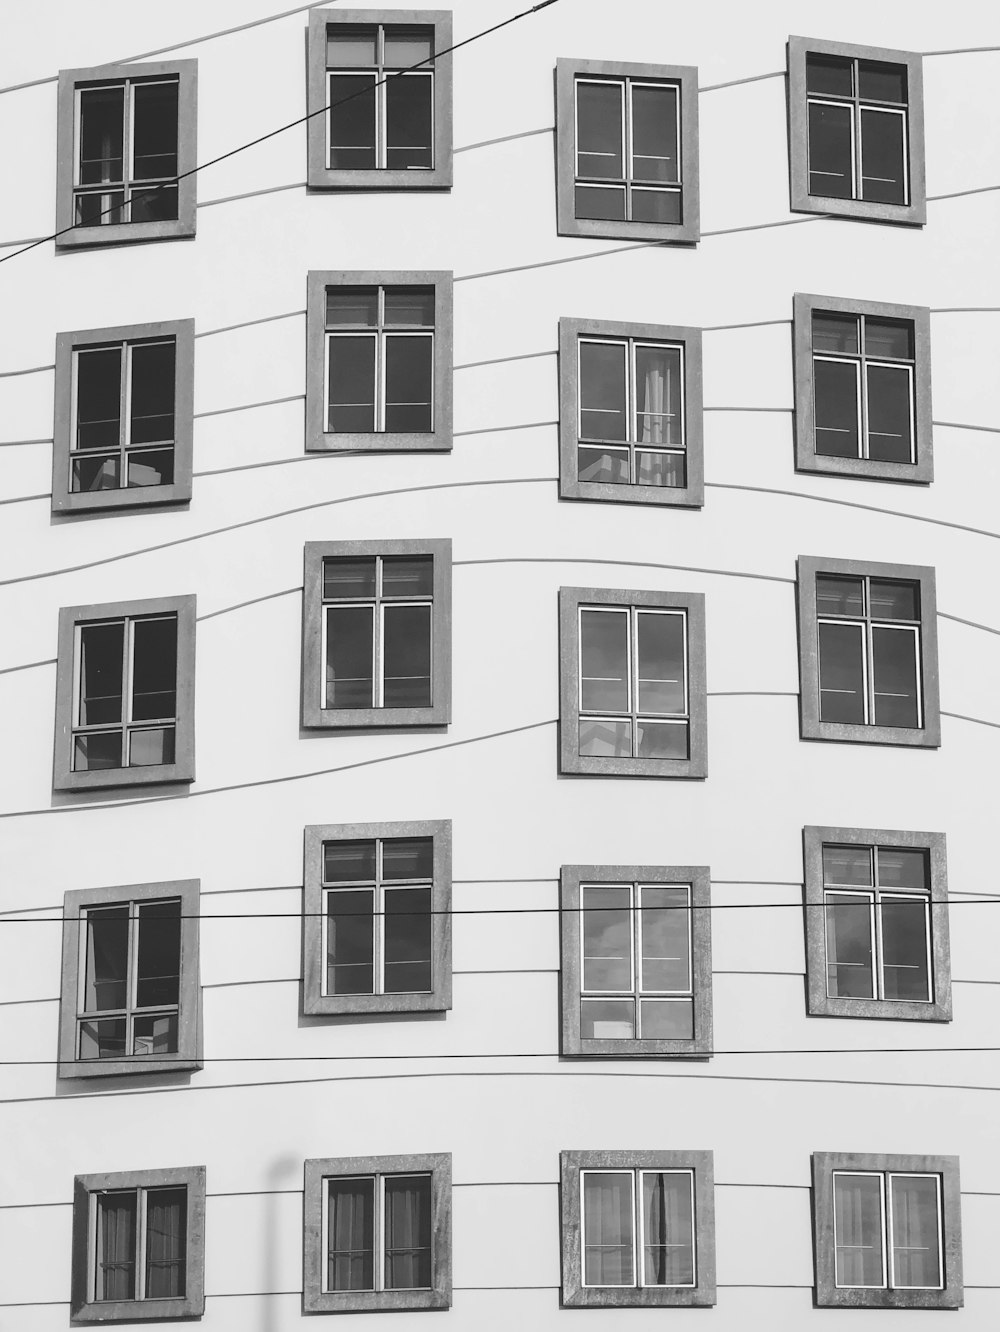 foto in scala di grigi delle finestre degli edifici